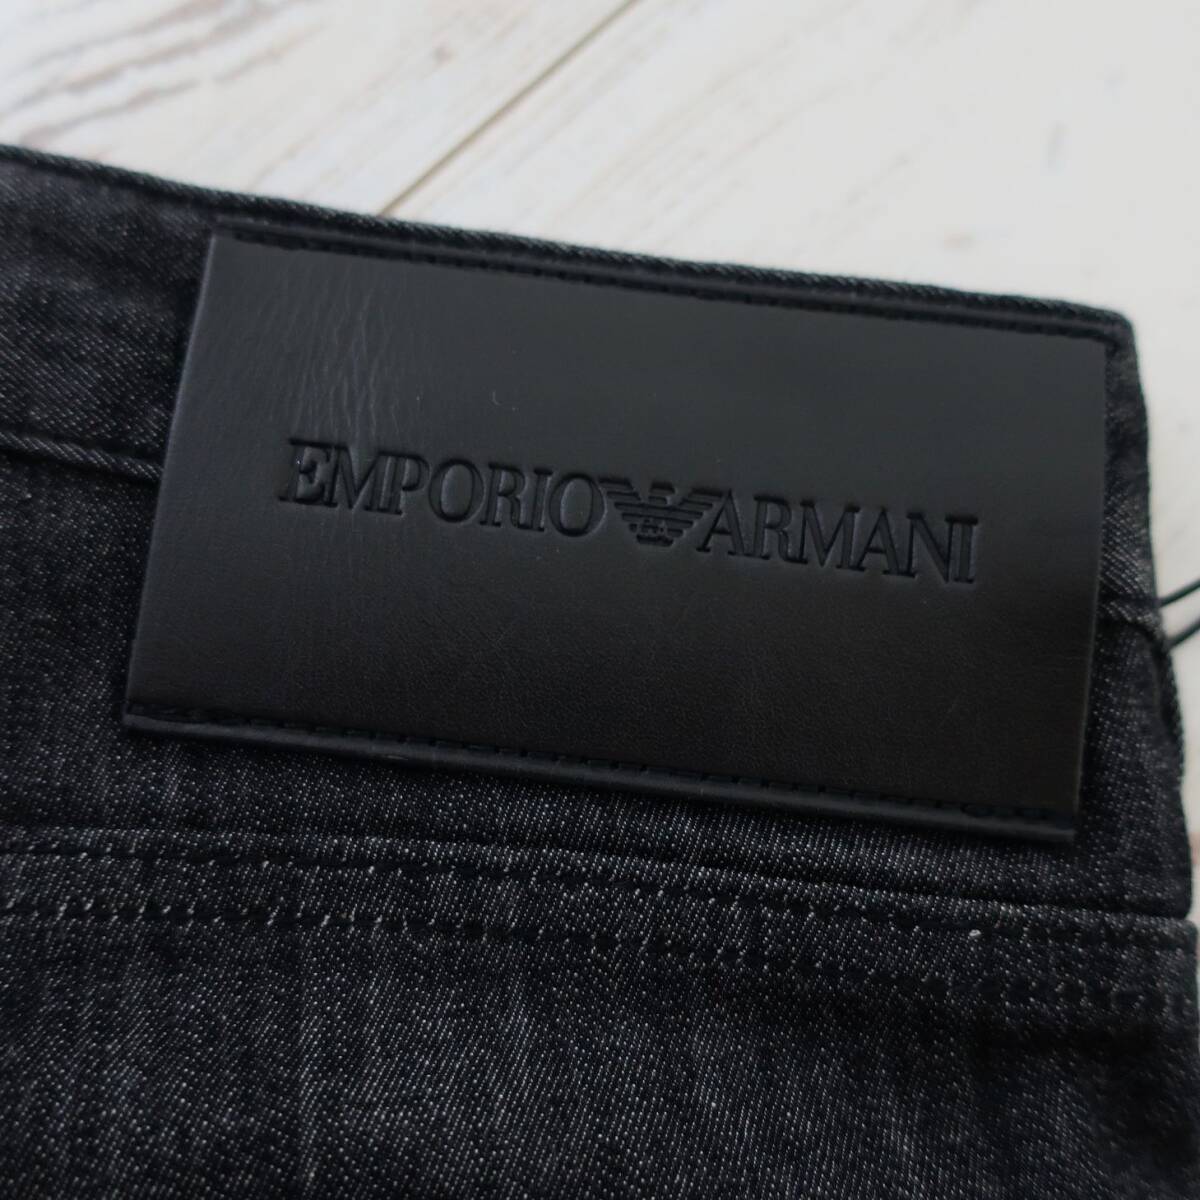 新品 未使用 EMPORIO ARMANI 定番 スリムフィット J06 ジーンズ メンズ ストレッチ デニム パンツ アルマーニ 黒 ブラック W30 Mサイズ